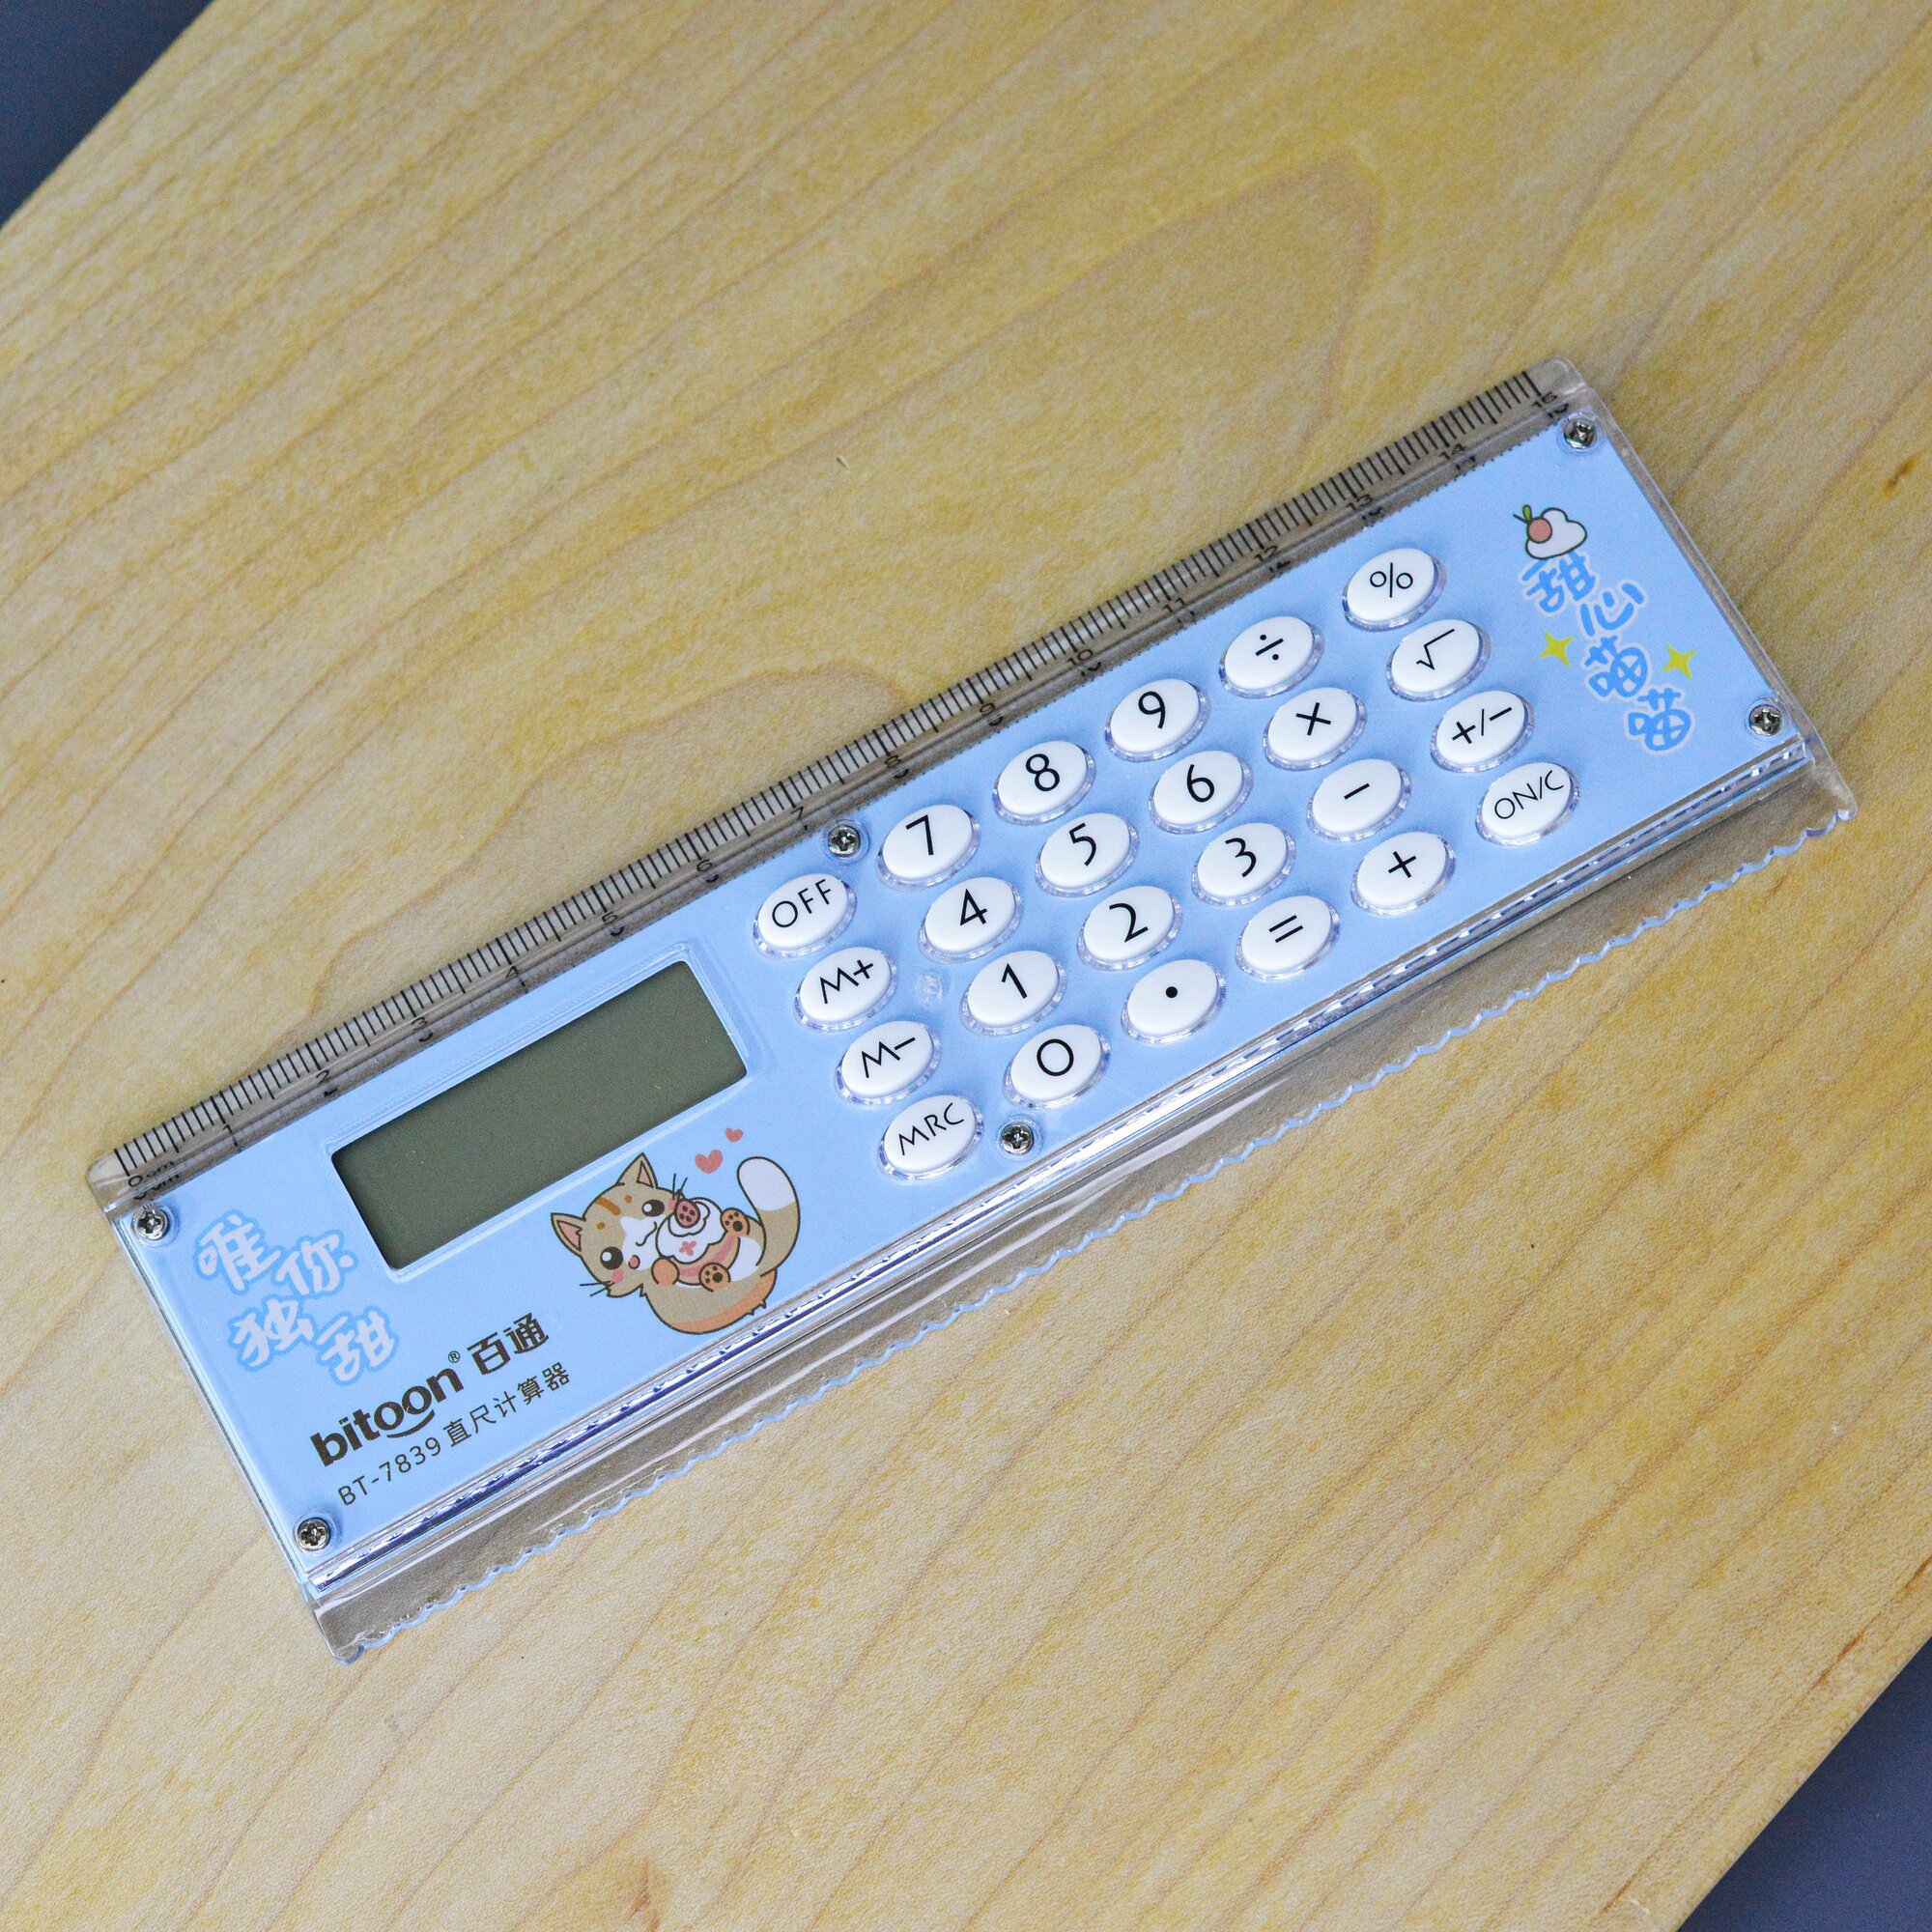 Калькулятор-линейка 8 разрядный / Калькулятор с линейкой для школы и офиса портативный маленький / Голубой